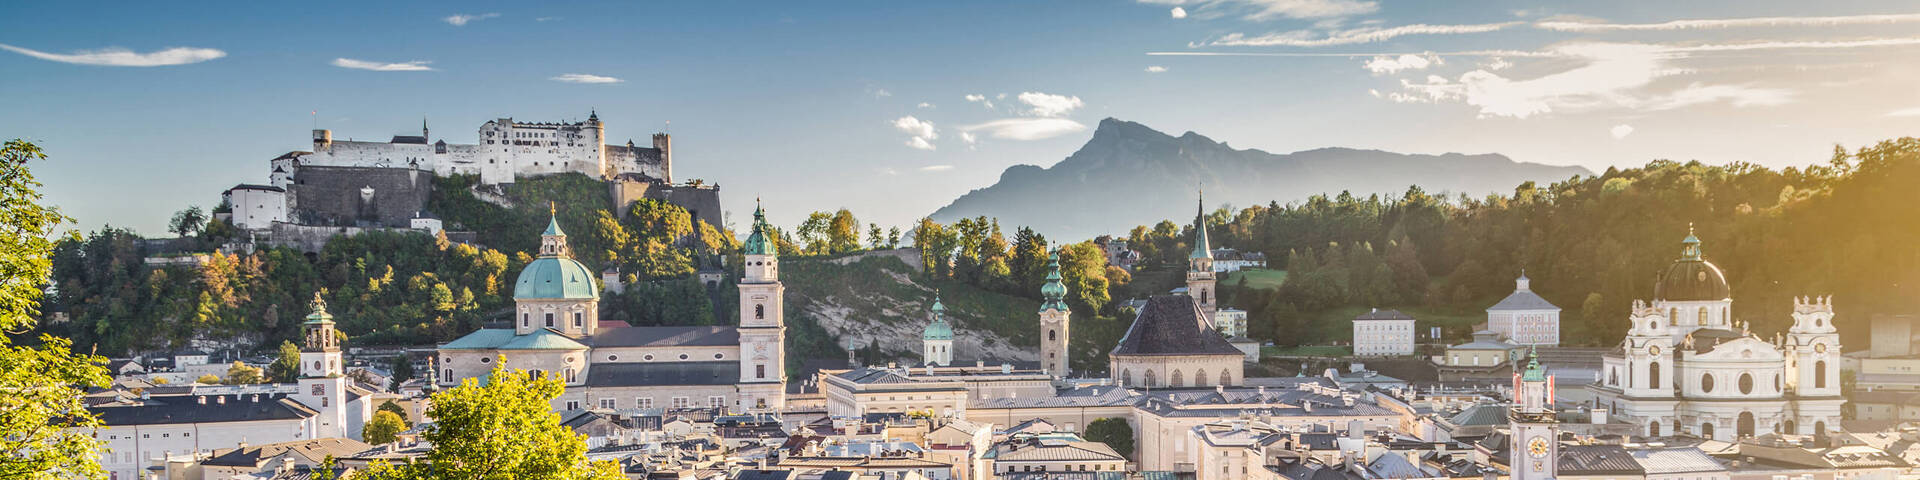 Salzburg im Panorama